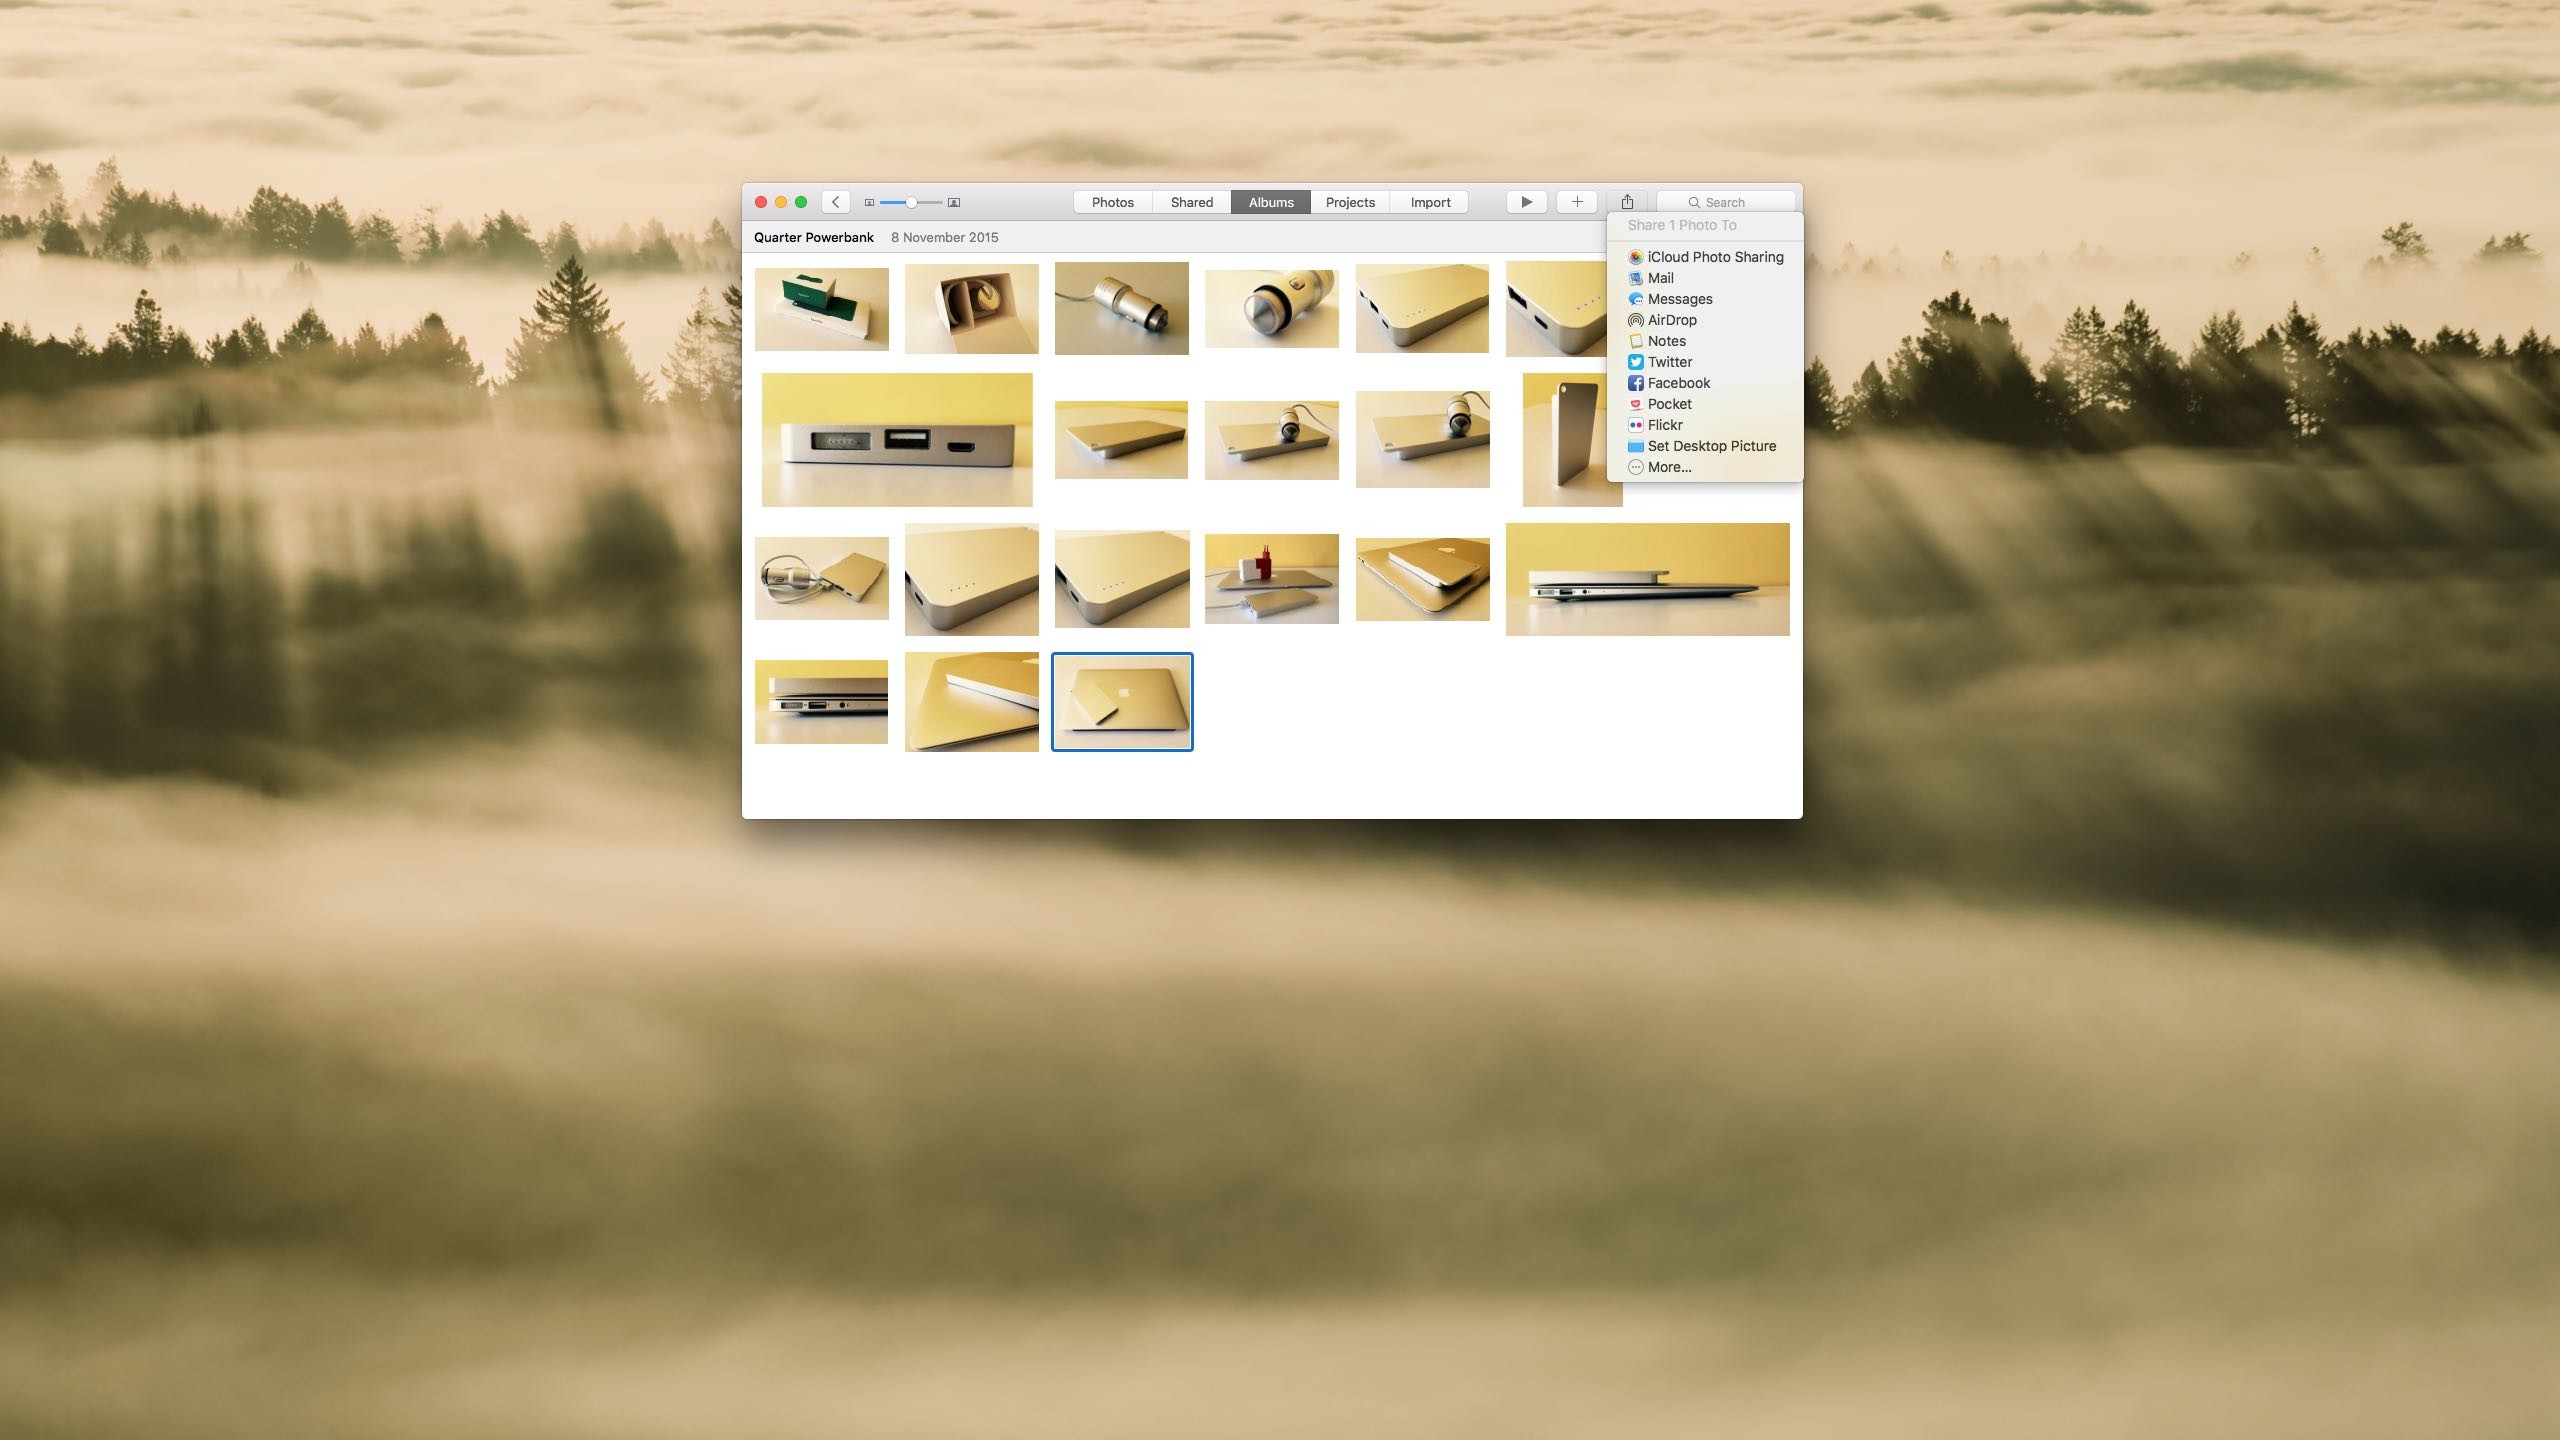 2560x1440 Photos for OS X how to set image as desktop wallpaper Mac screenshot 004